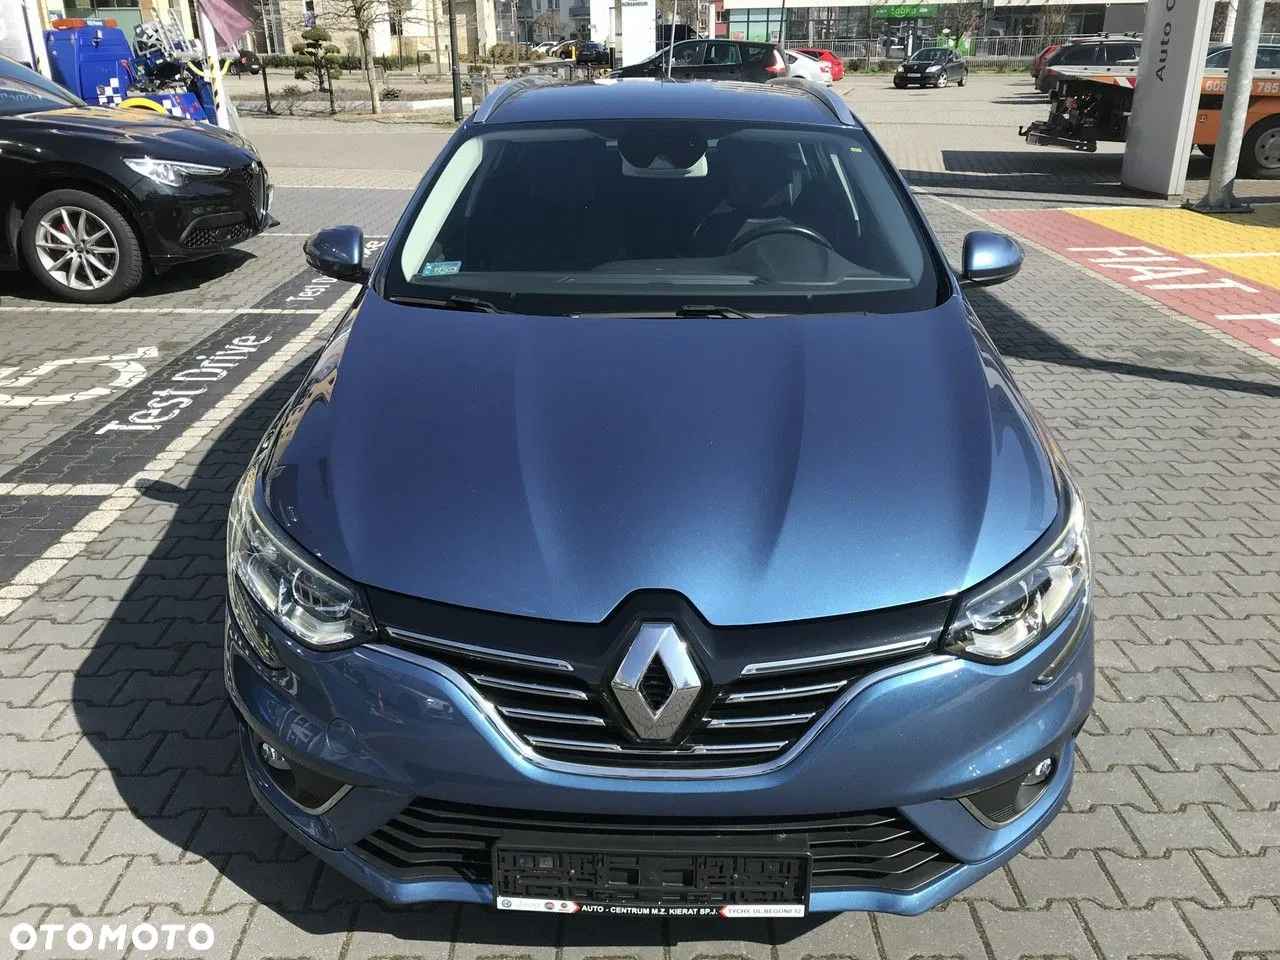 Renault Megane 2017 · 66 260 km · 1 197 cm3 · Benzyna Tychy - zdjęcie 2